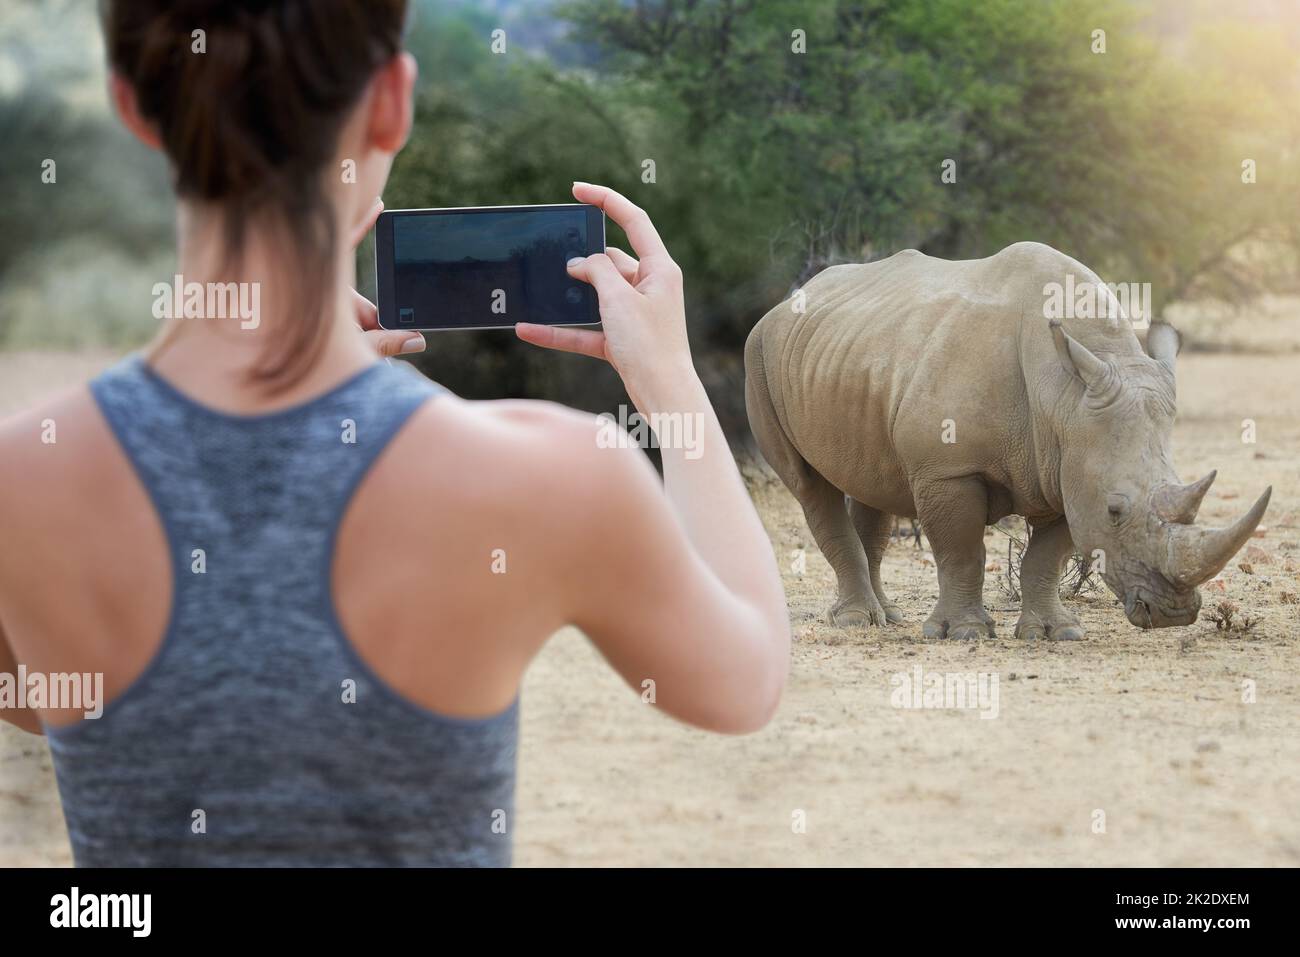 Immortaliser une expérience inoubliable. Prise de vue d'une jeune femme non identifiable prenant une photo d'un rhinocéros dans la nature. Banque D'Images